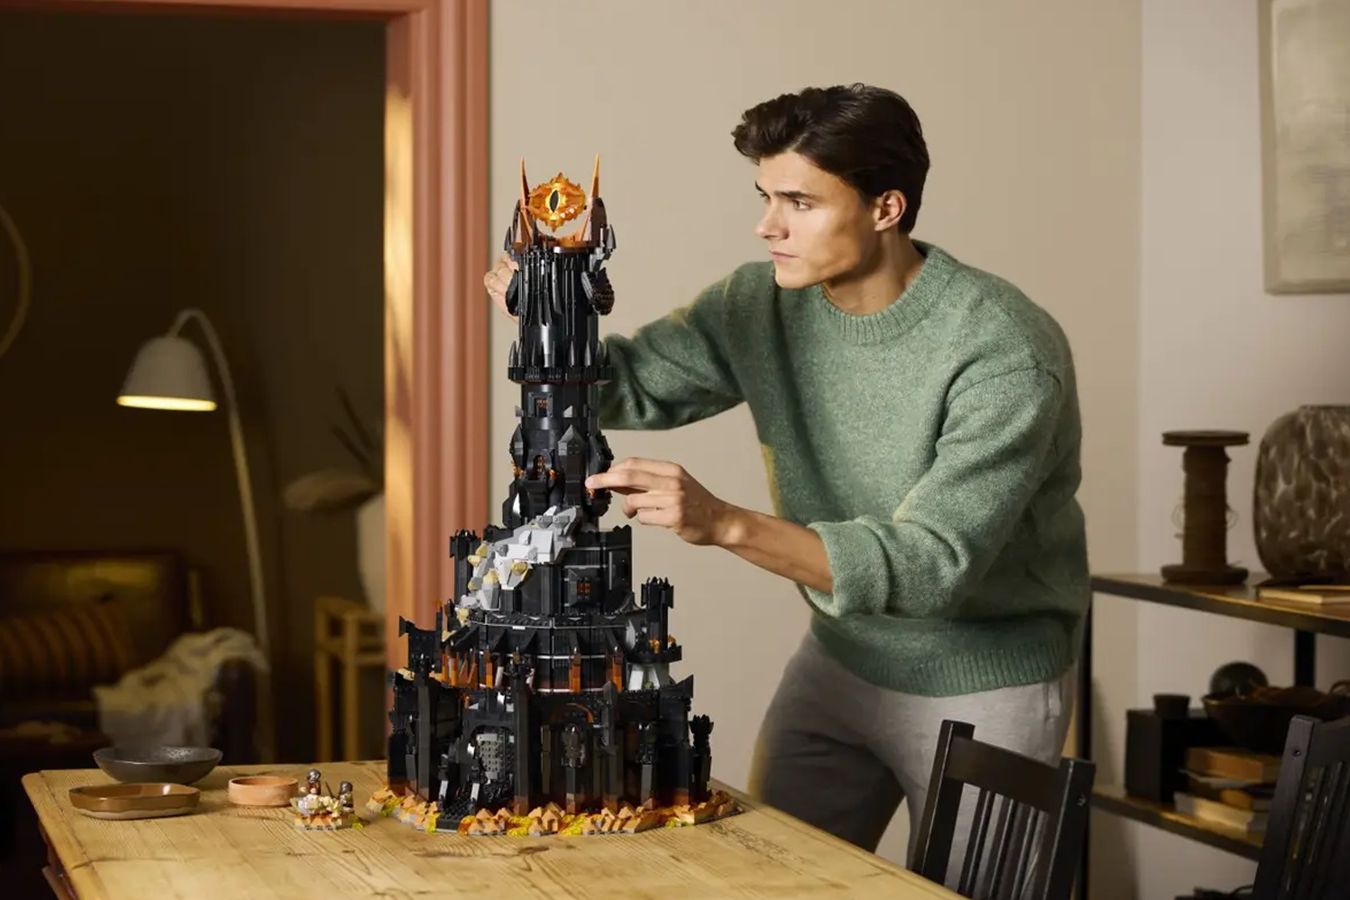 LEGO представила набор по Властелину колец  с башней Саурона и Всевидящим Оком